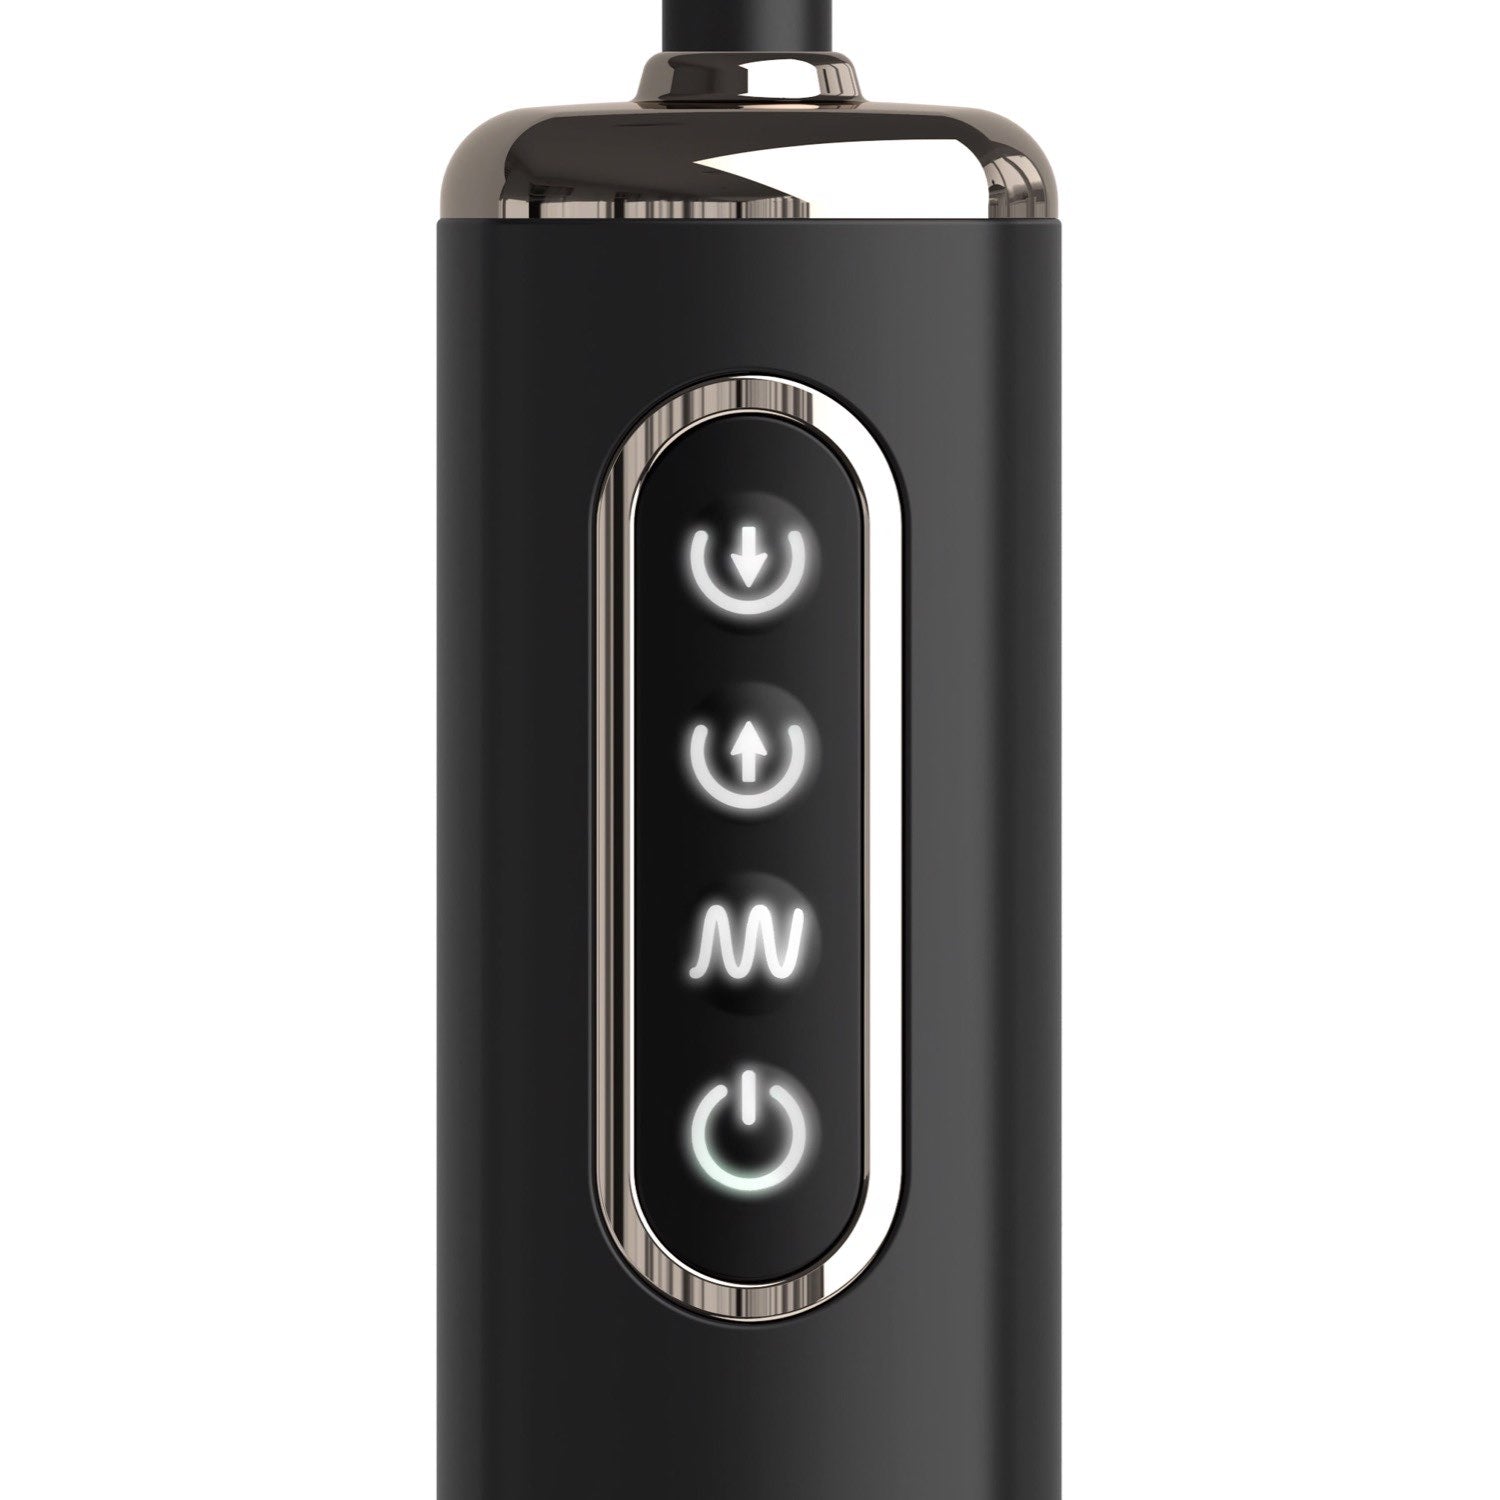 肛门 幻想 精英 Auto Throb 充气振动塞 - 黑色 13 厘米 USB 可充电充气对接塞 by Pipedream